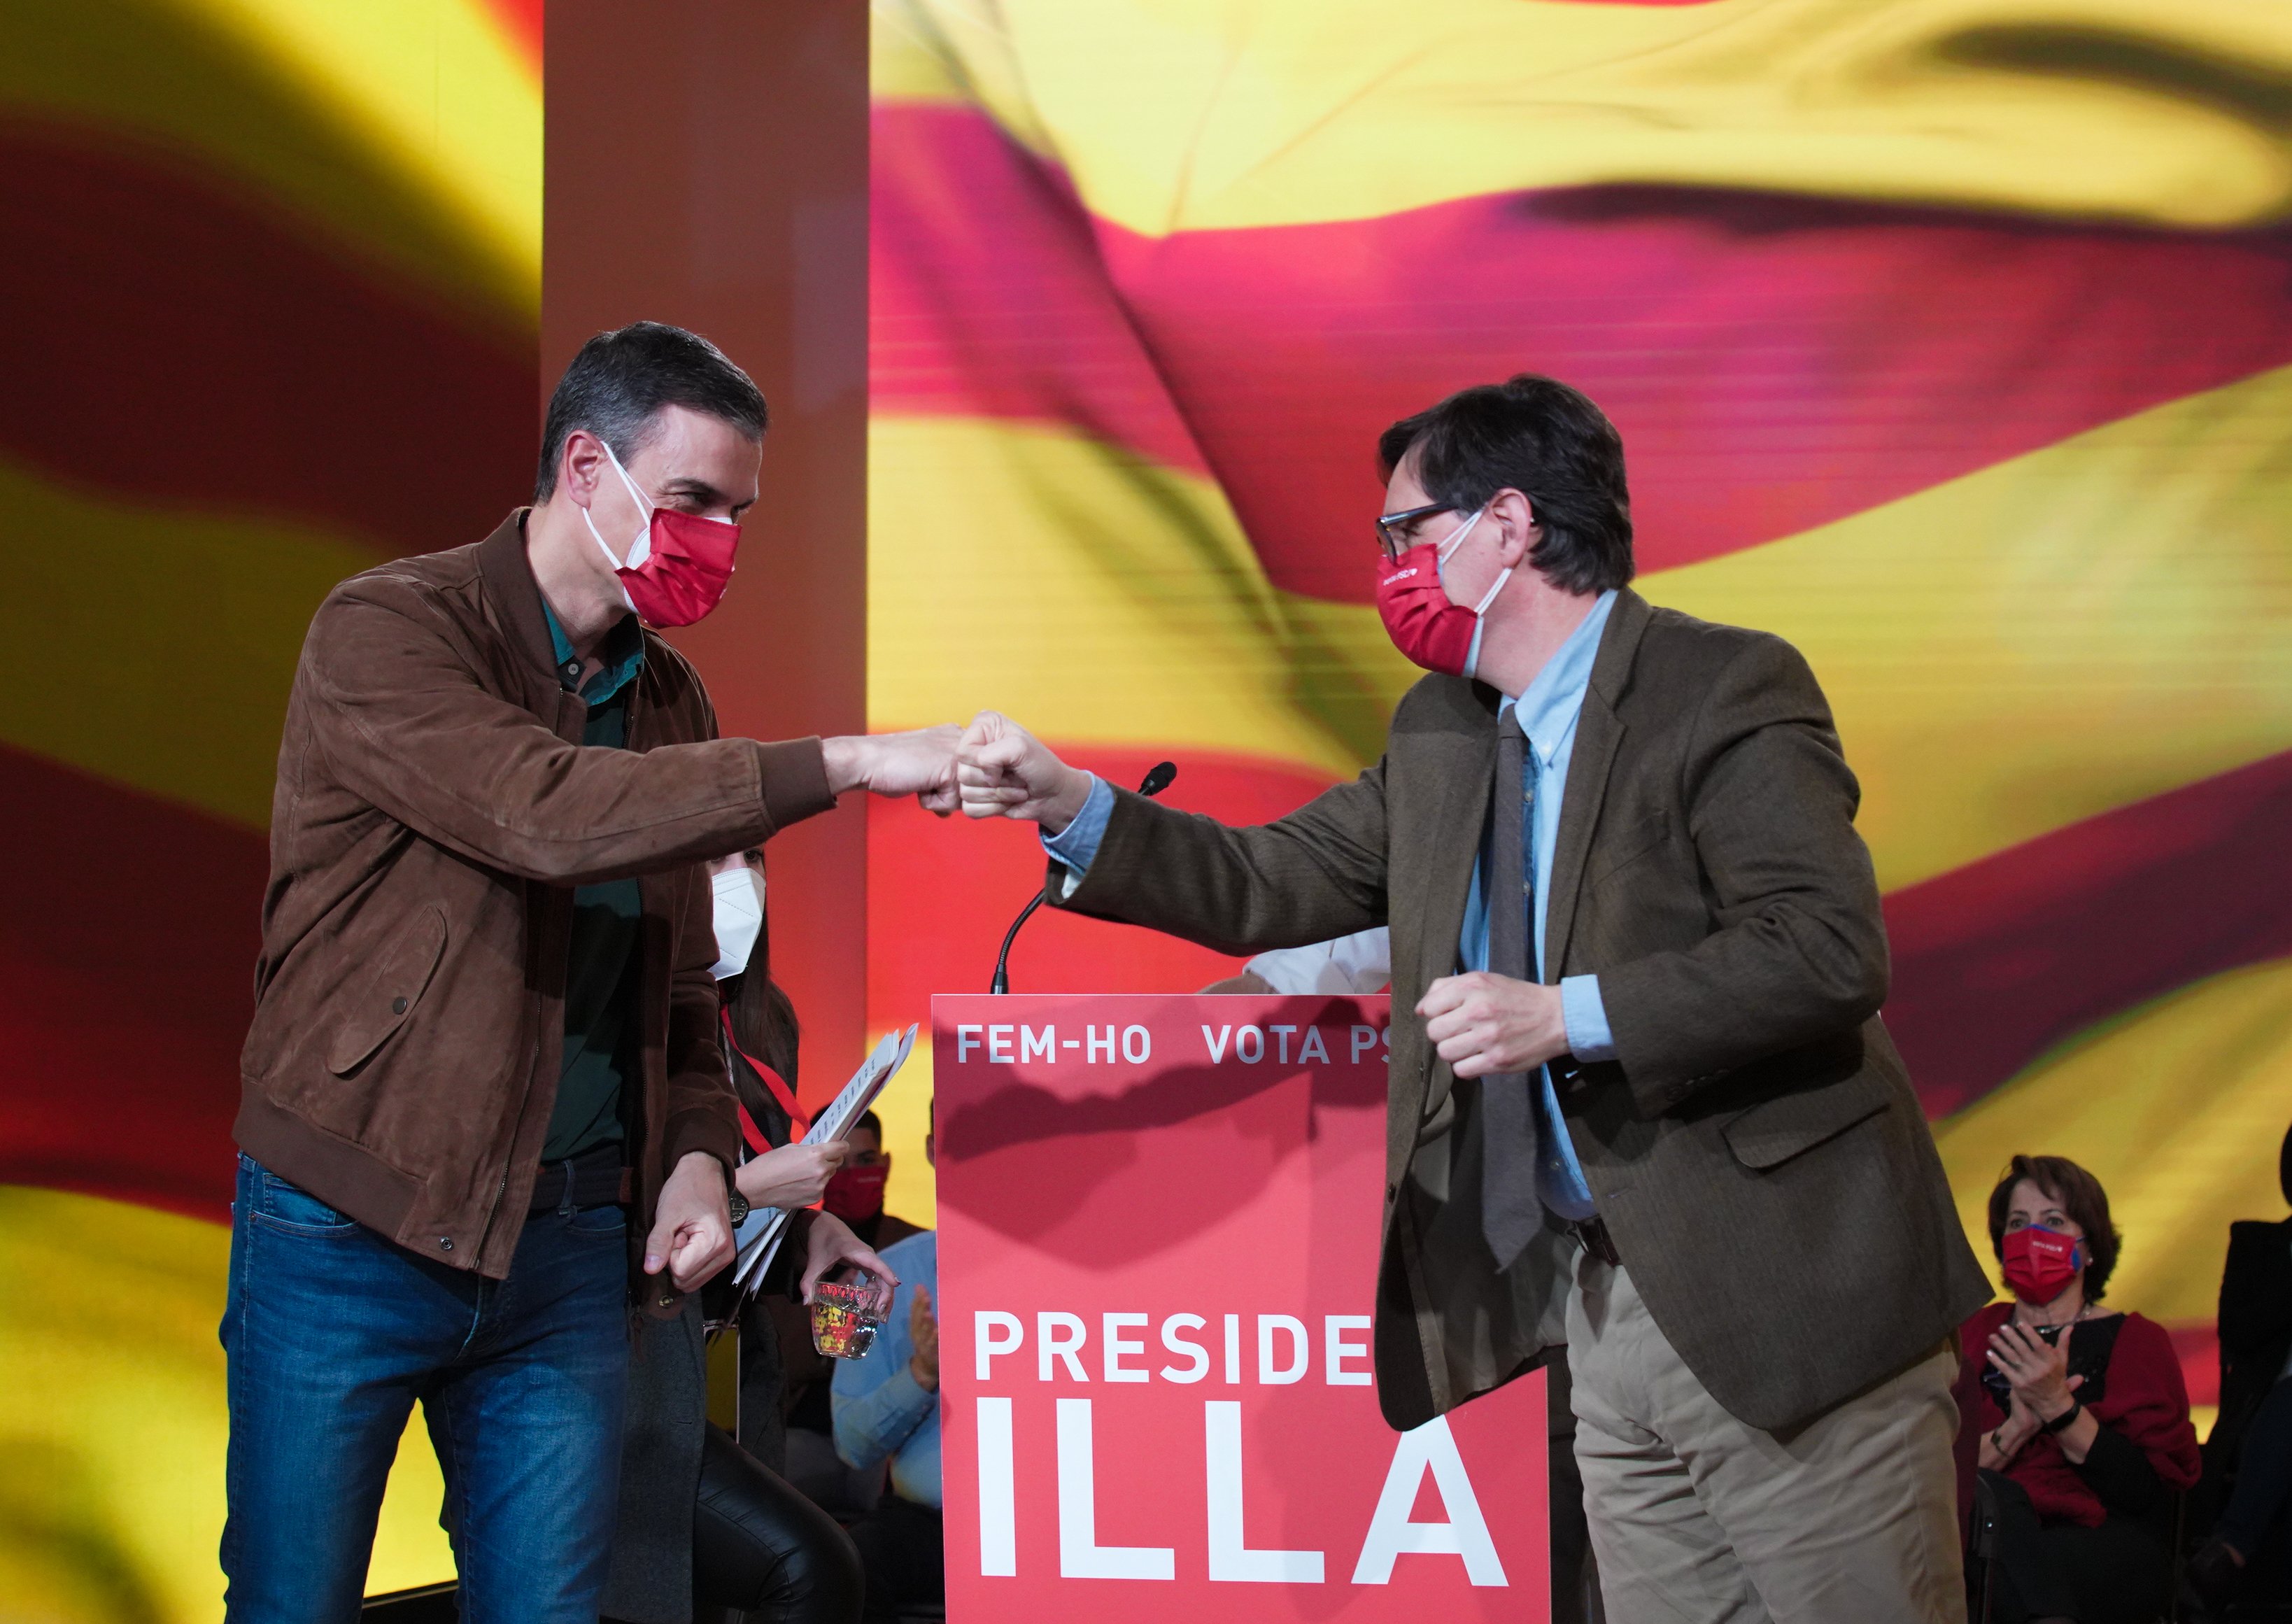 Sánchez i Illa clouen la campanya blasmant l'independentisme: "Són odi perpetu"